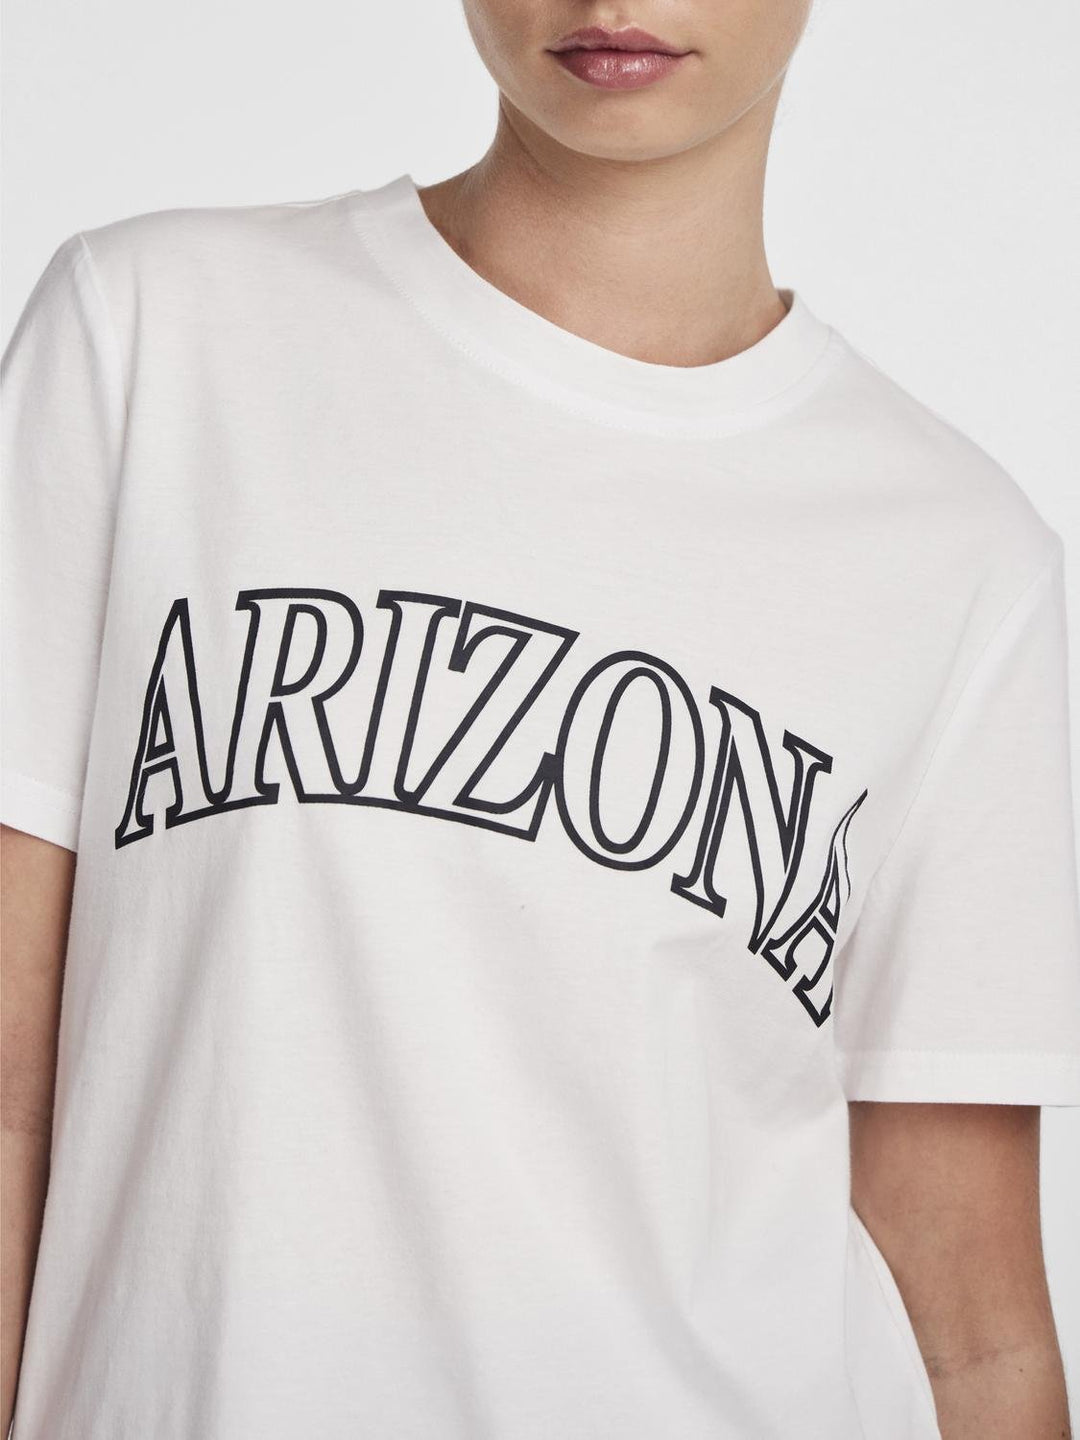 Freya T-Shirt - Arizona White